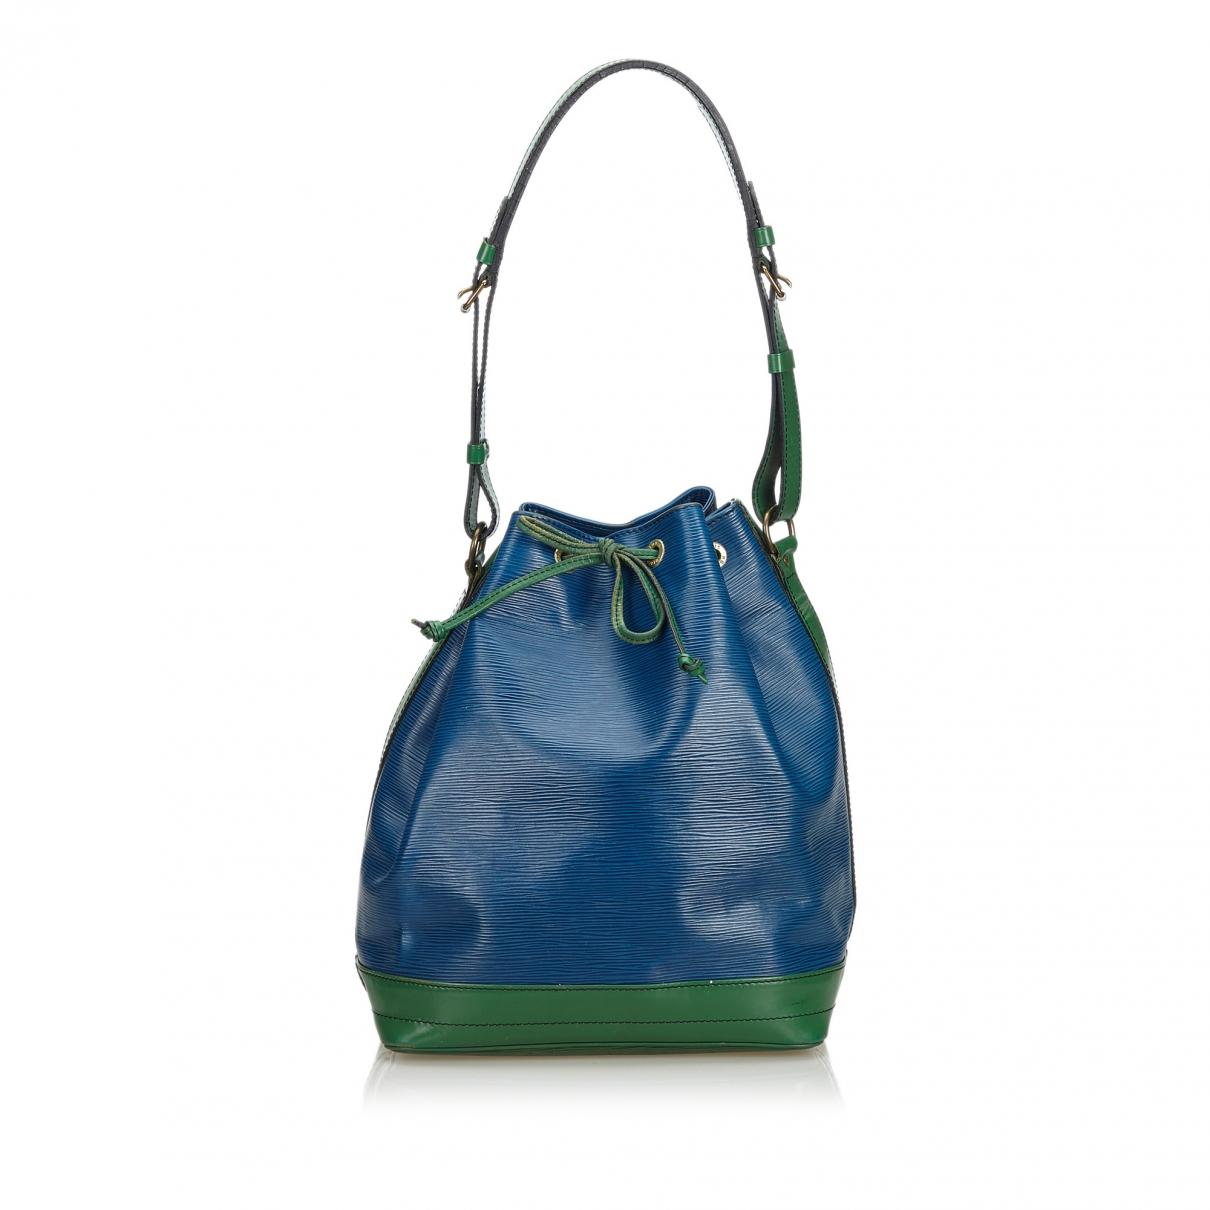 Lyst - Louis Vuitton Vintage Noé Blue Leather Handbag in Blue